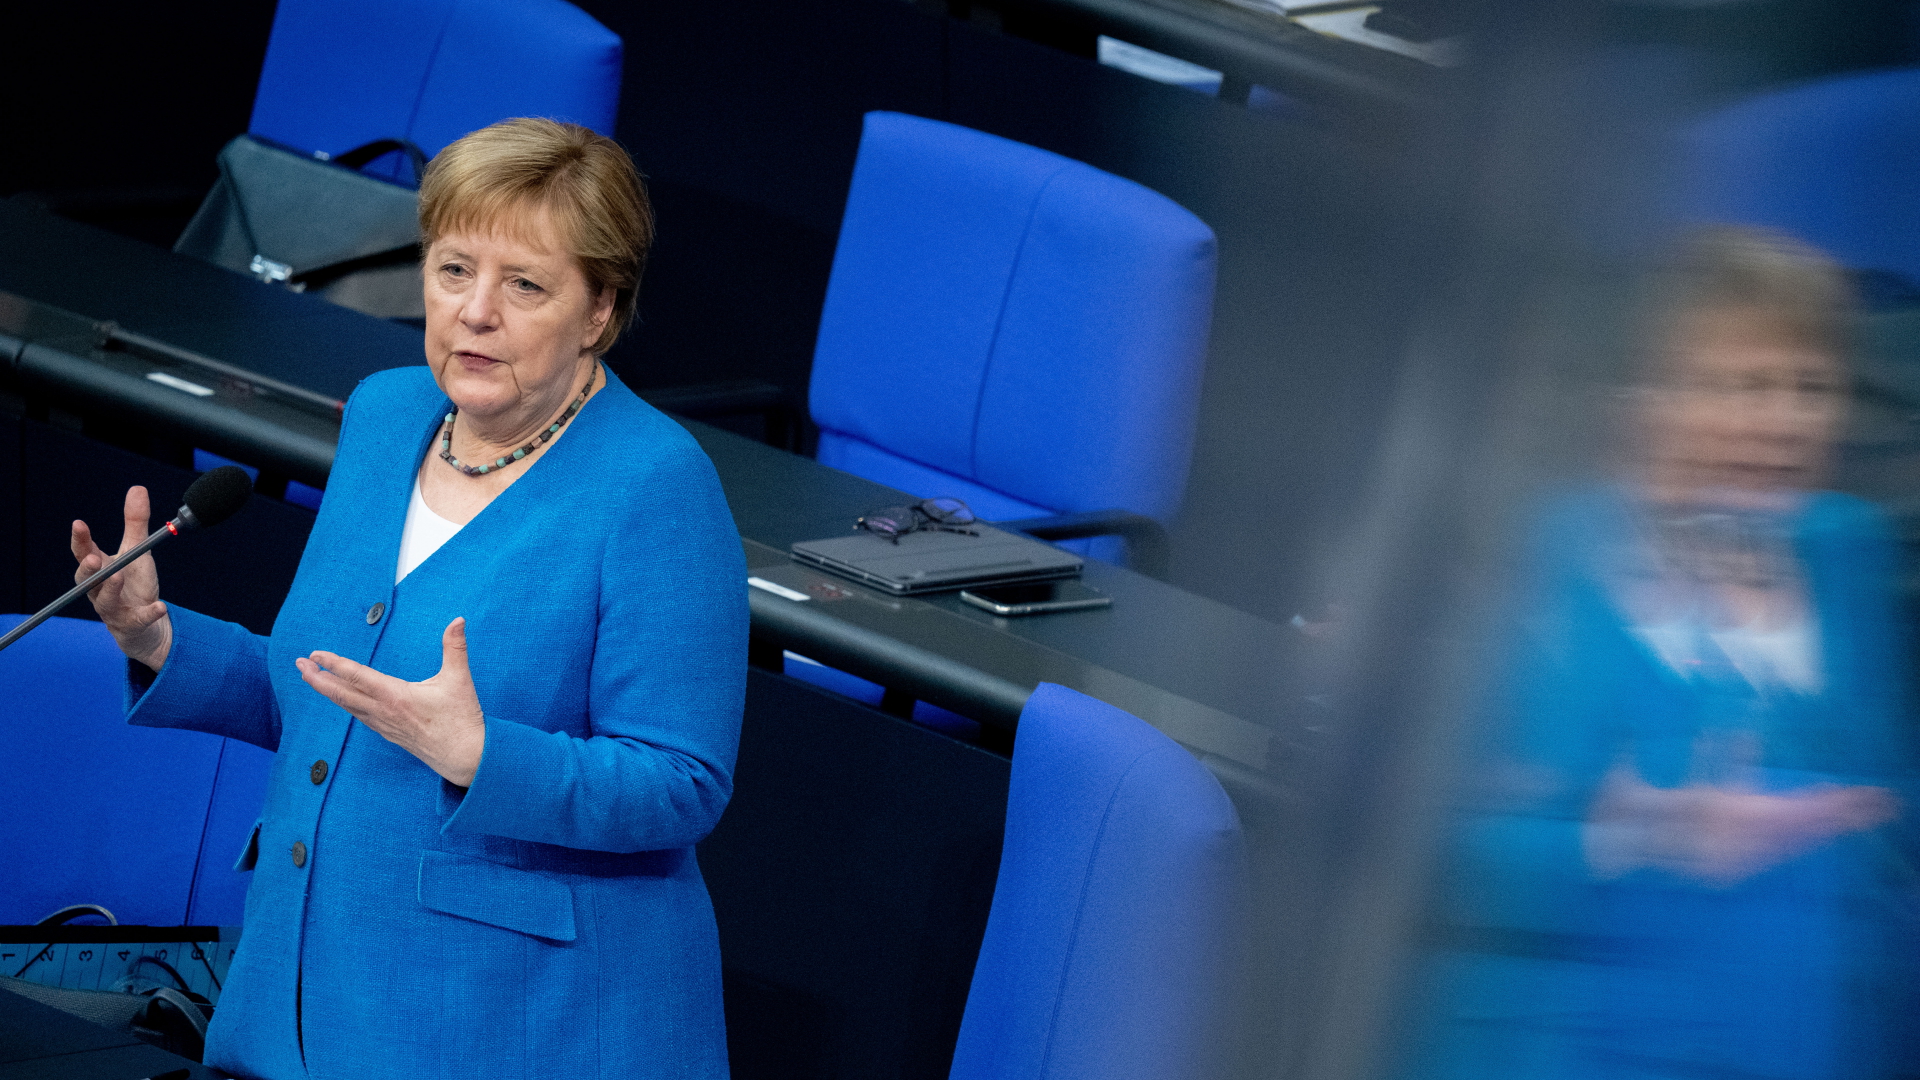 Bundeskanzlerin Angela Merkel (CDU) spricht bei der Regierungsbefragung während der Plenarsitzung im Deutschen Bundestag | dpa